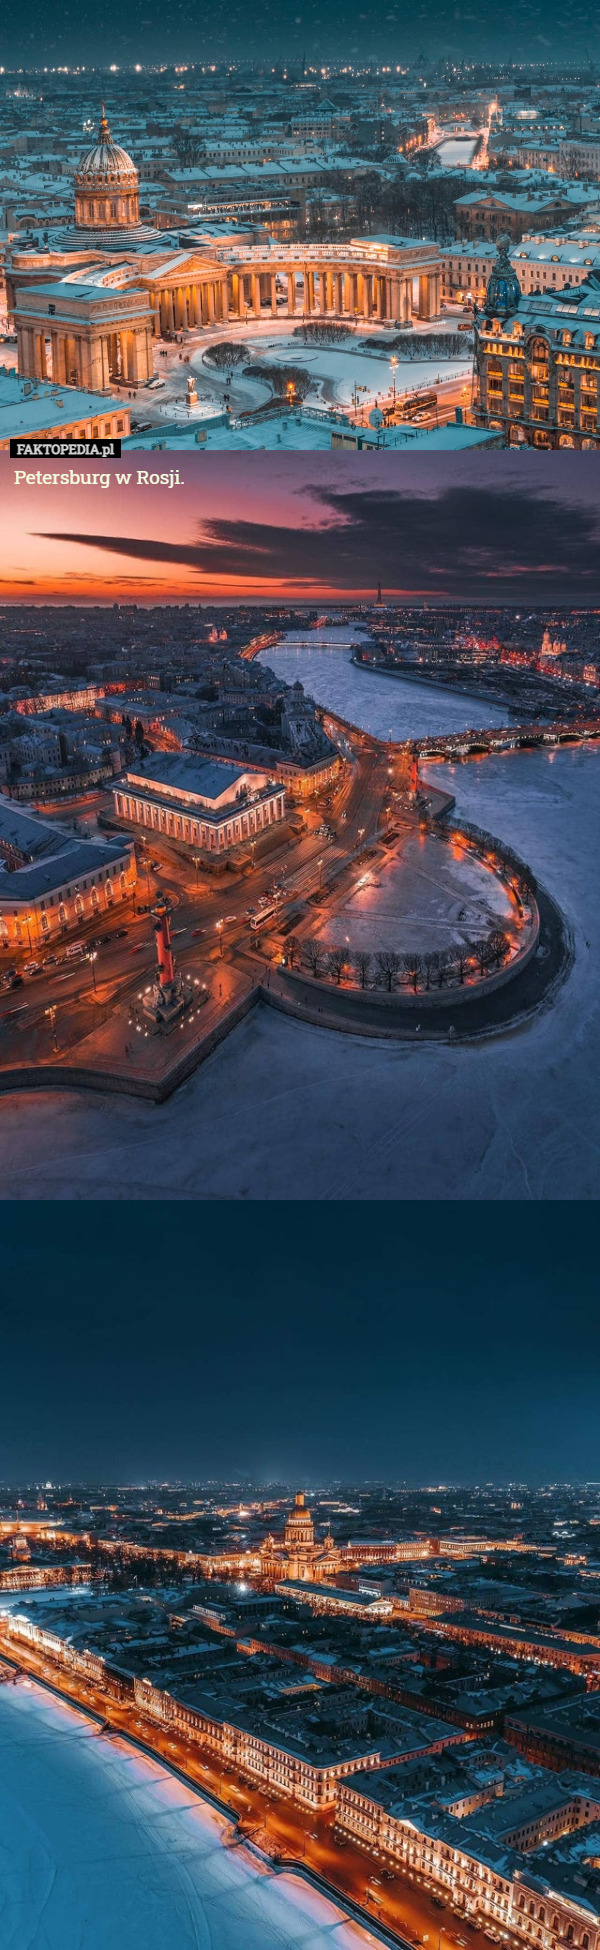 Petersburg w Rosji. 